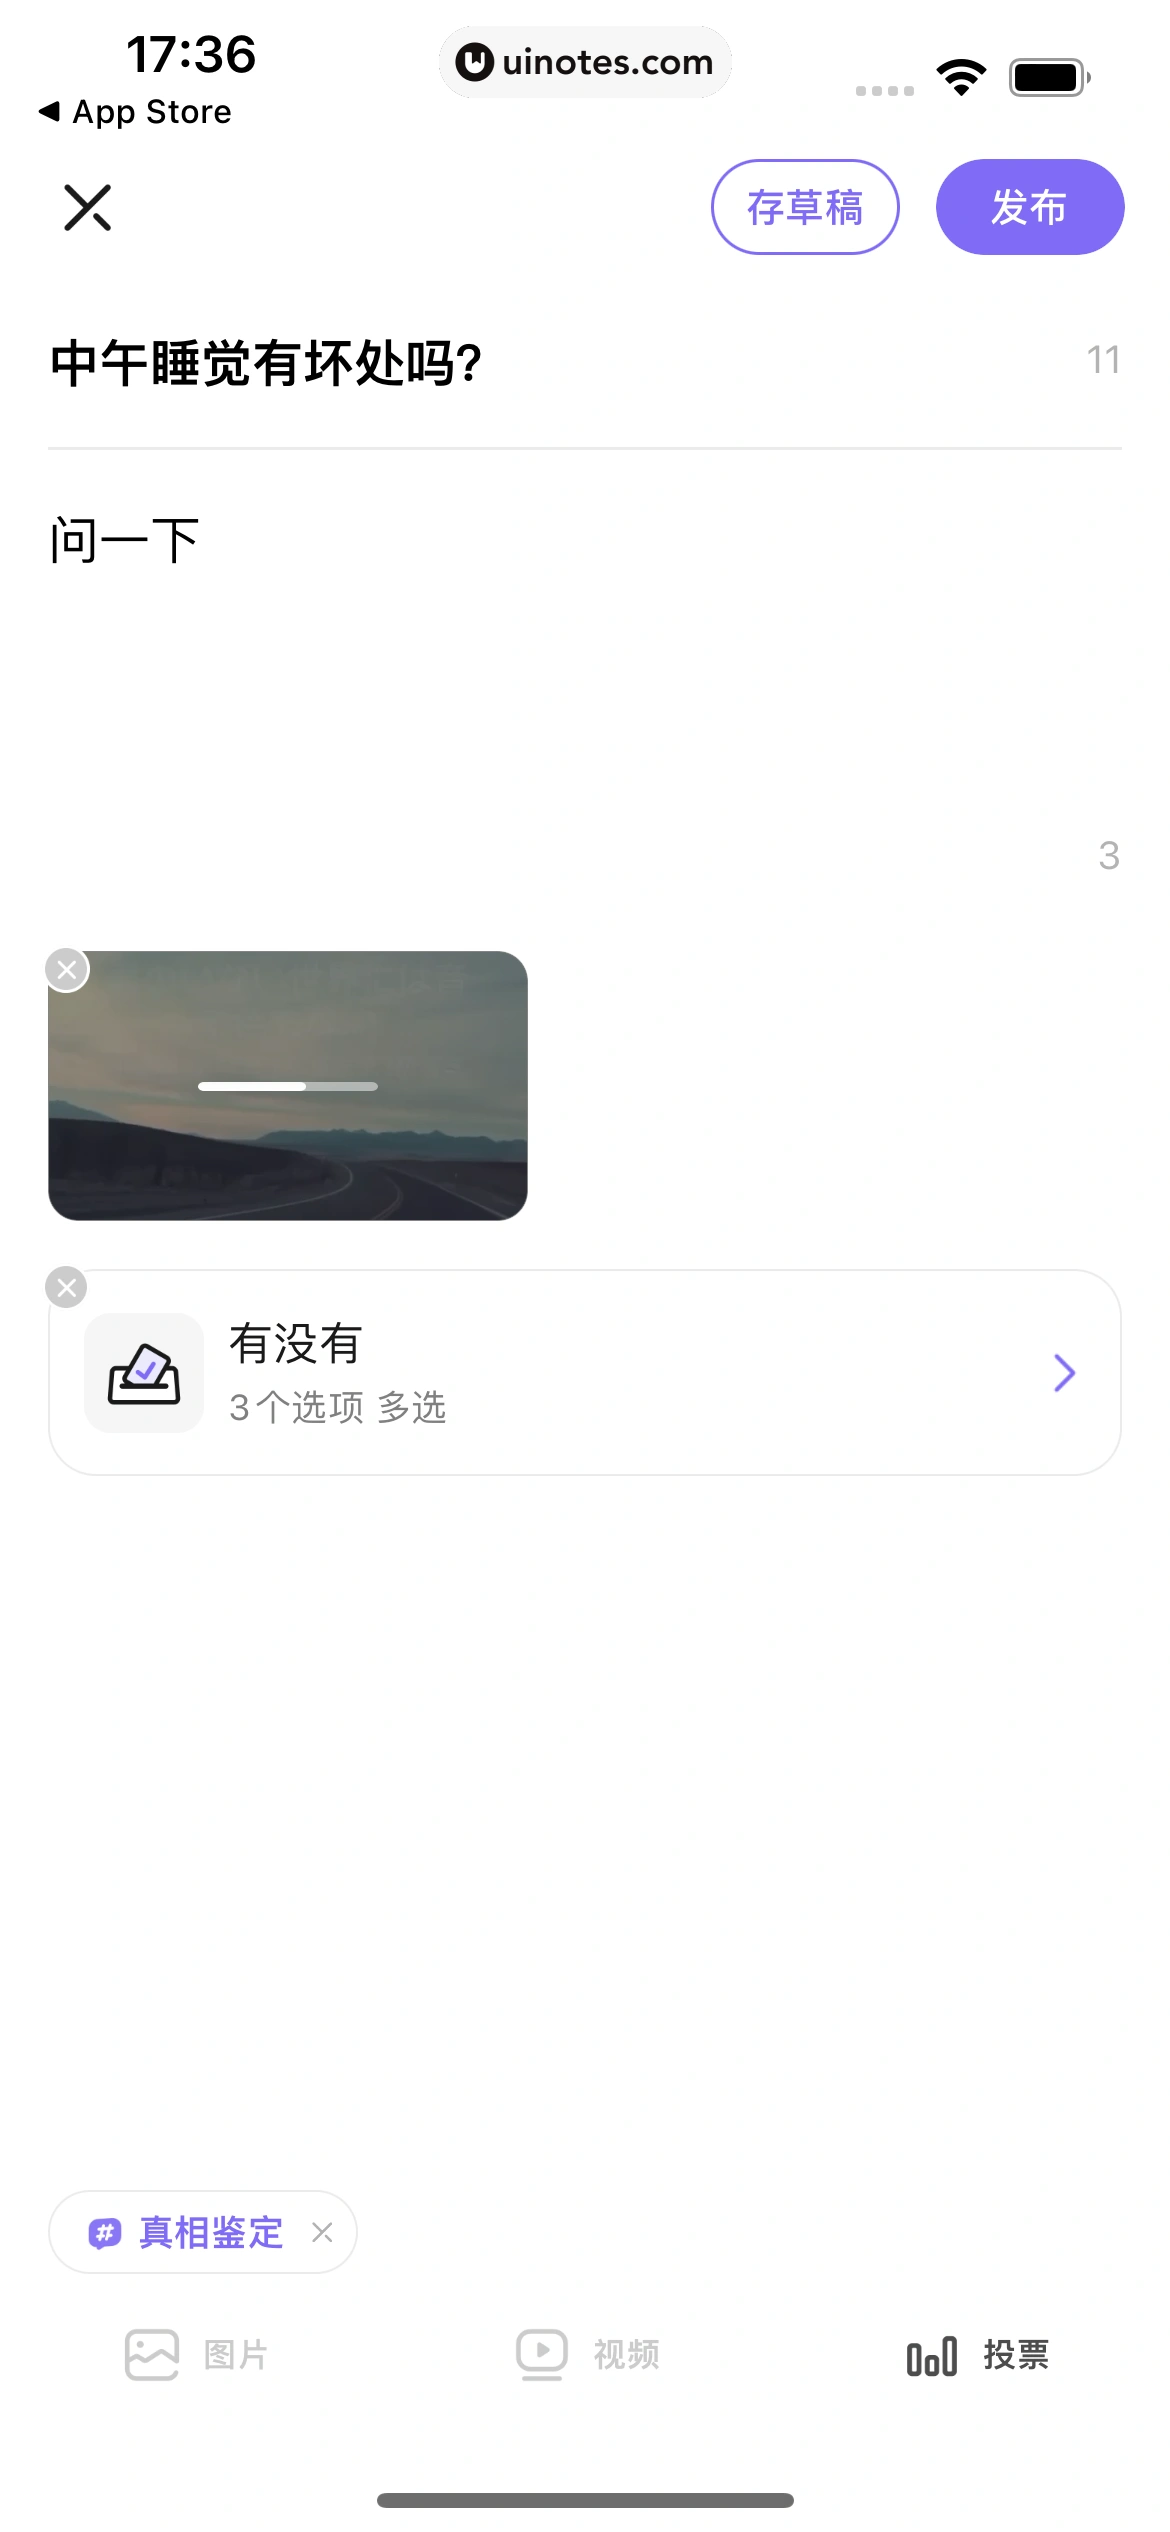 丁香医生 App 截图 067 - UI Notes